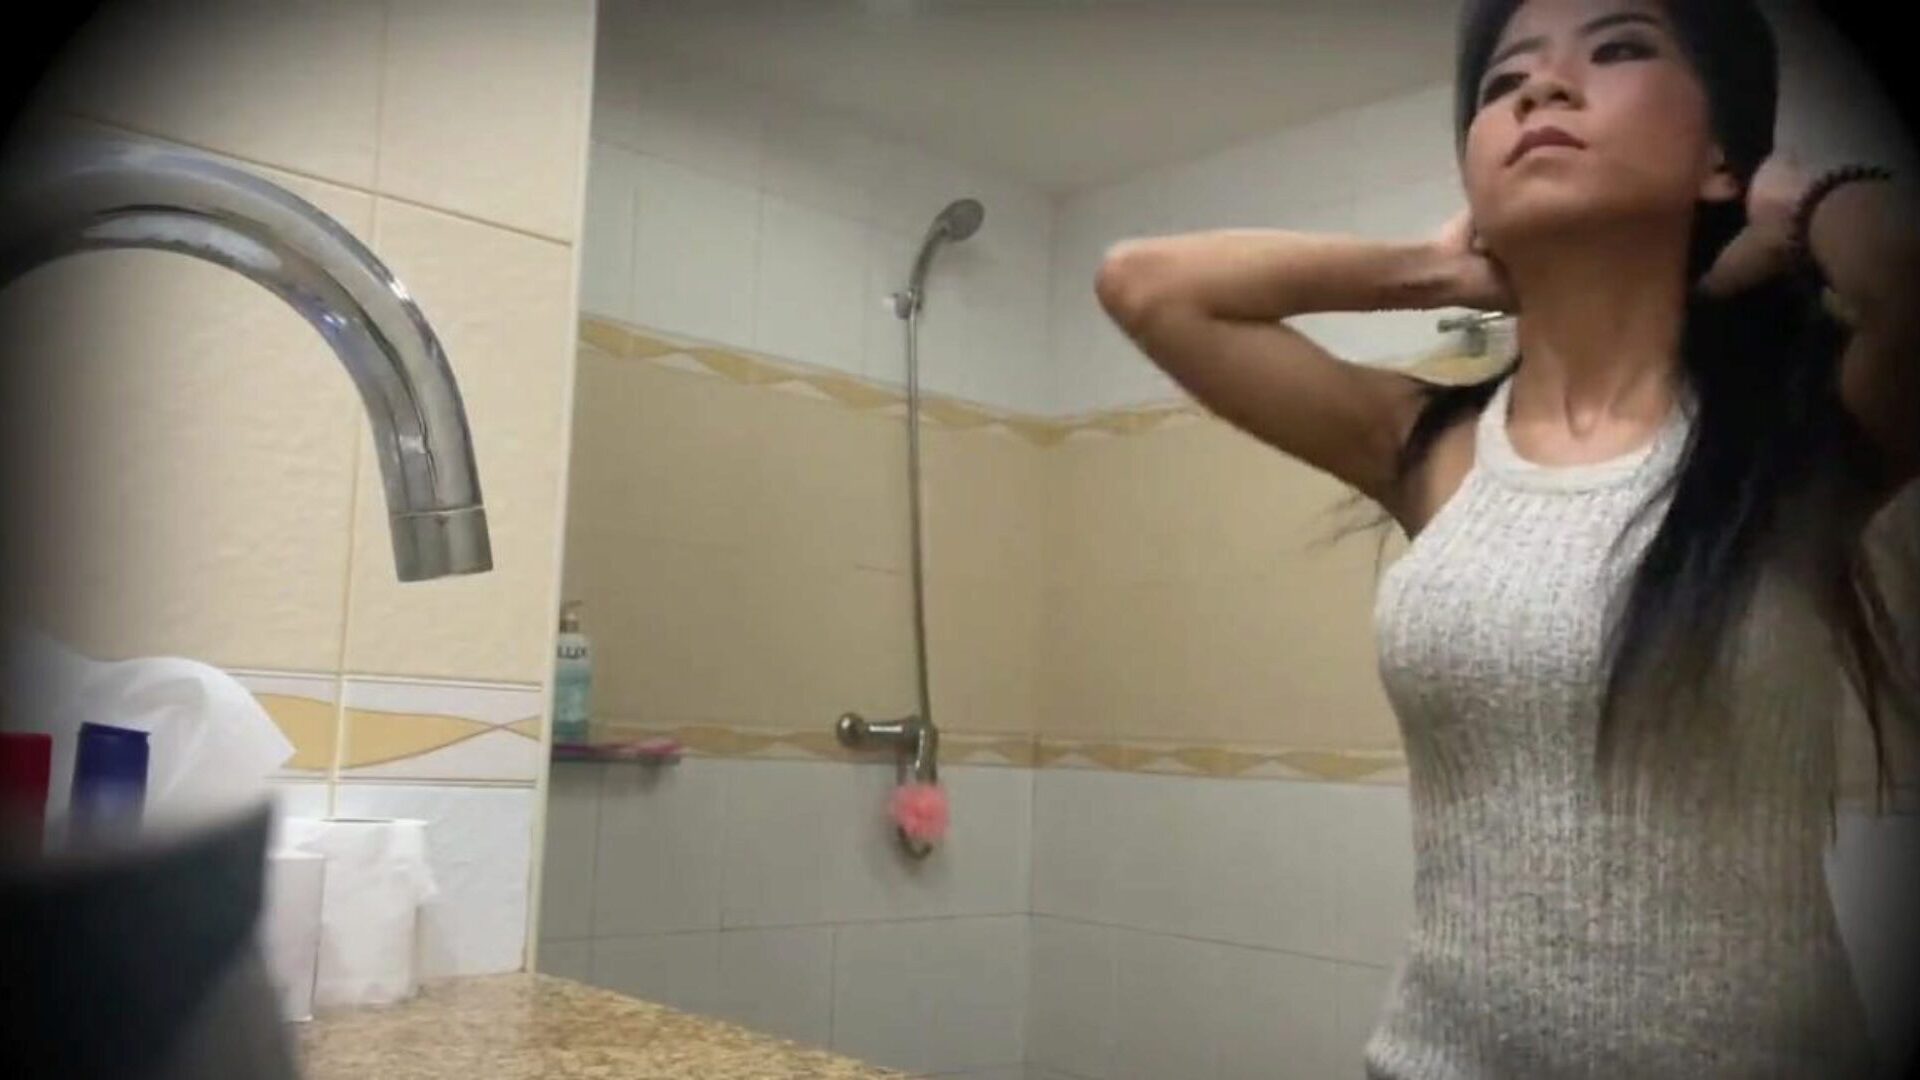 wspaniała tajska prostytutka zerżnięta przed ukrytą kamerą: oglądaj porno chłopaka wspaniała tajska prostytutka zerżnięta ukrytą kamerą wideo na xHamster - ostateczny wybór darmowych filmów porno z azjatyckimi nastolatkami HD Gonzo